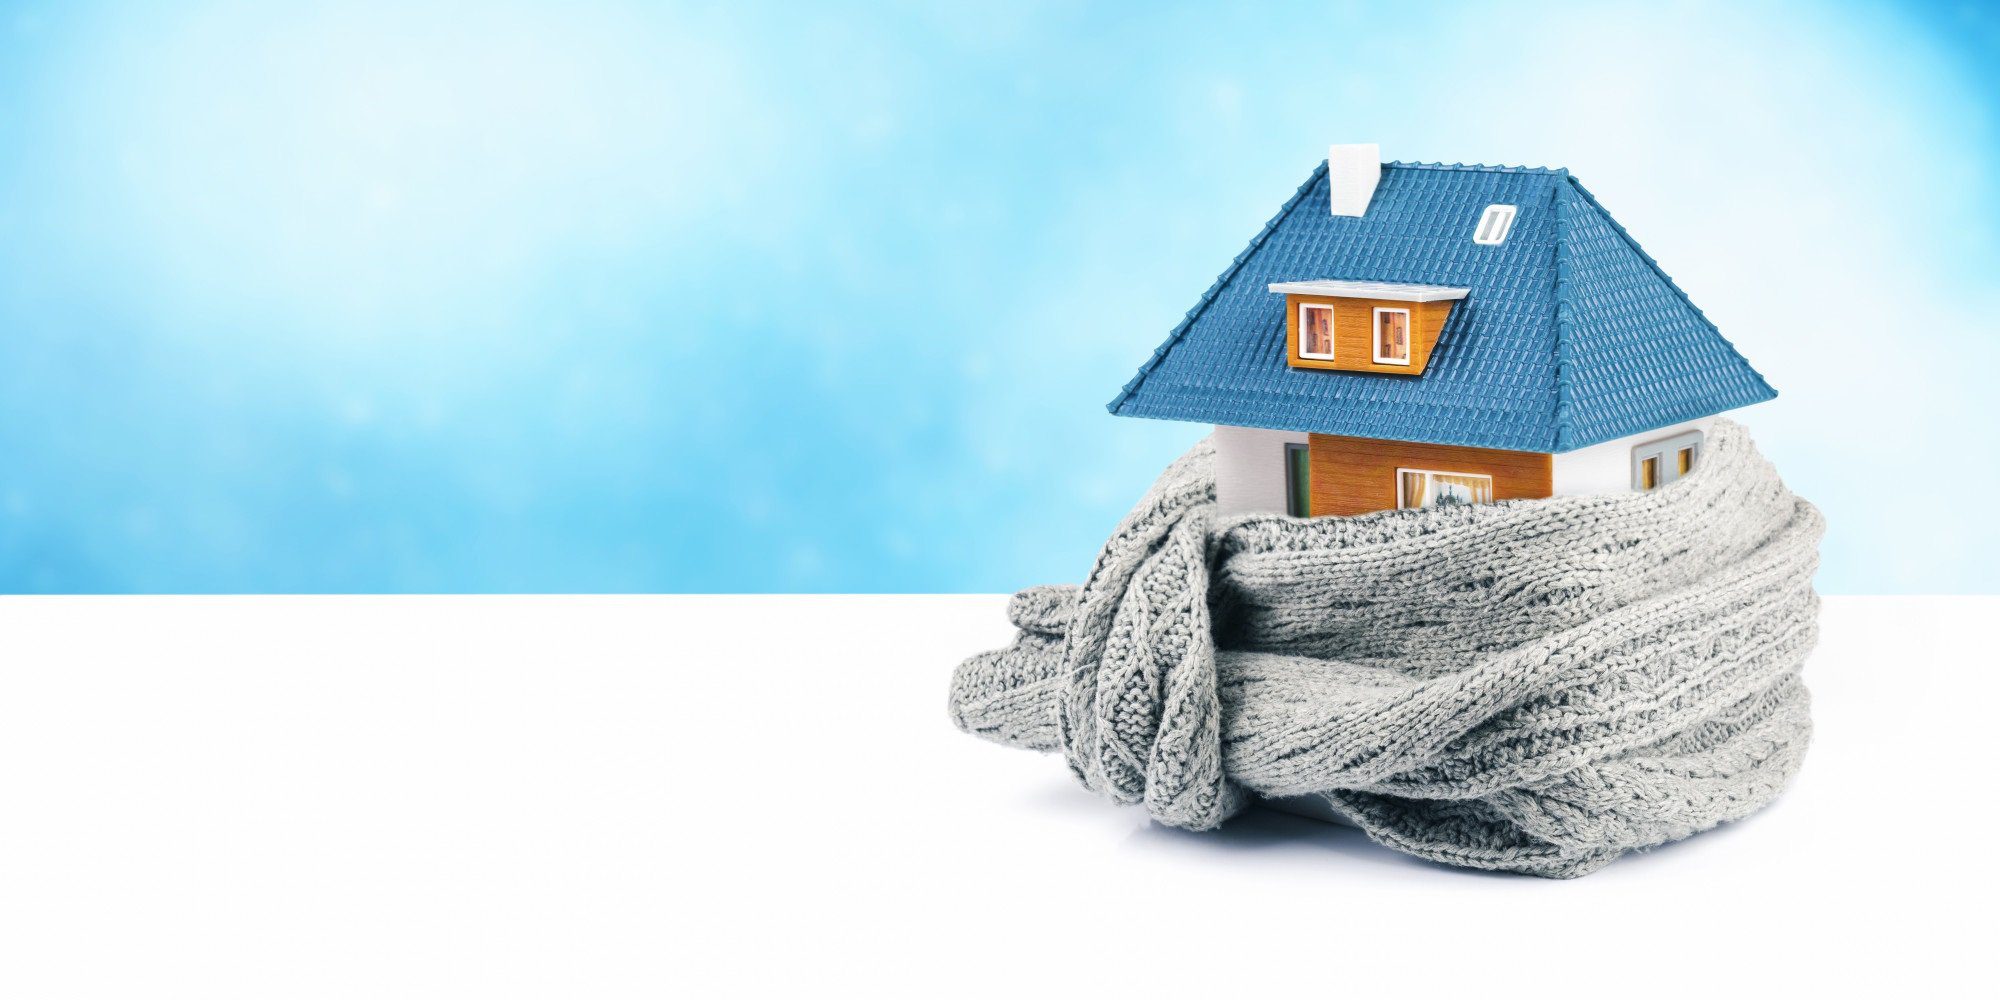 winterizing a home checklist